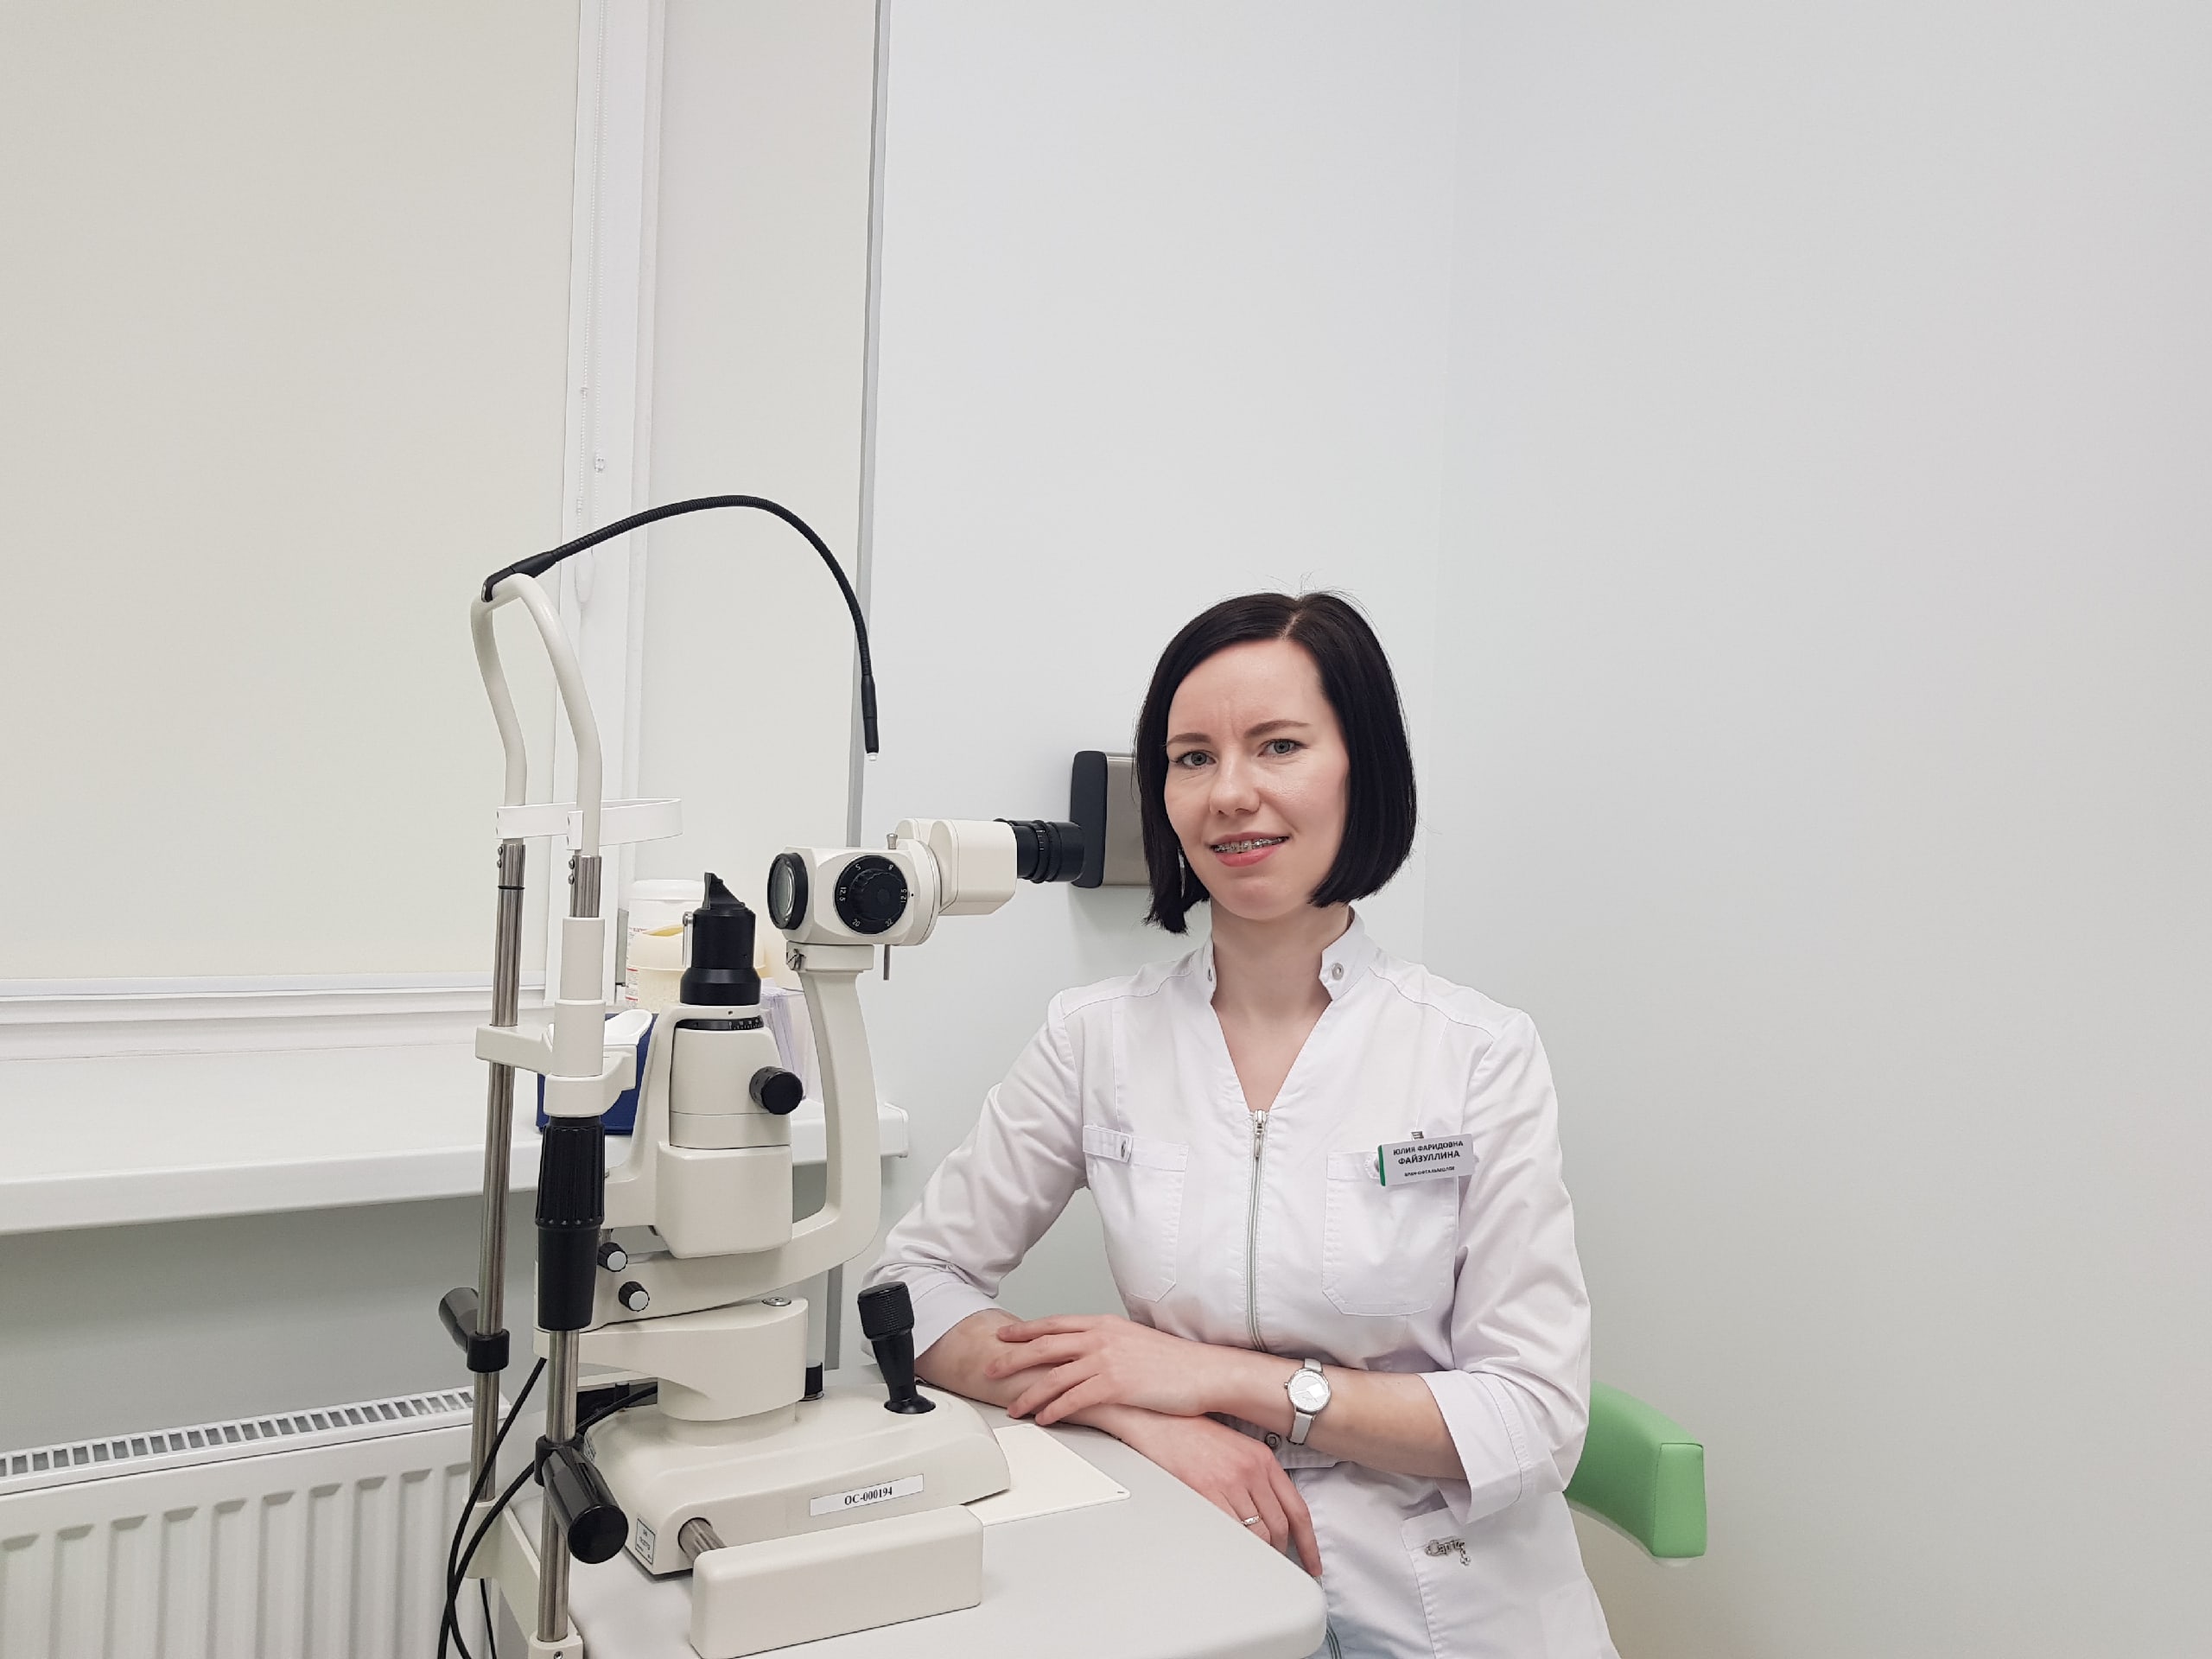 Как мечта стала реальностью: История детского врача-диагноста офтальмологического центра Карелии